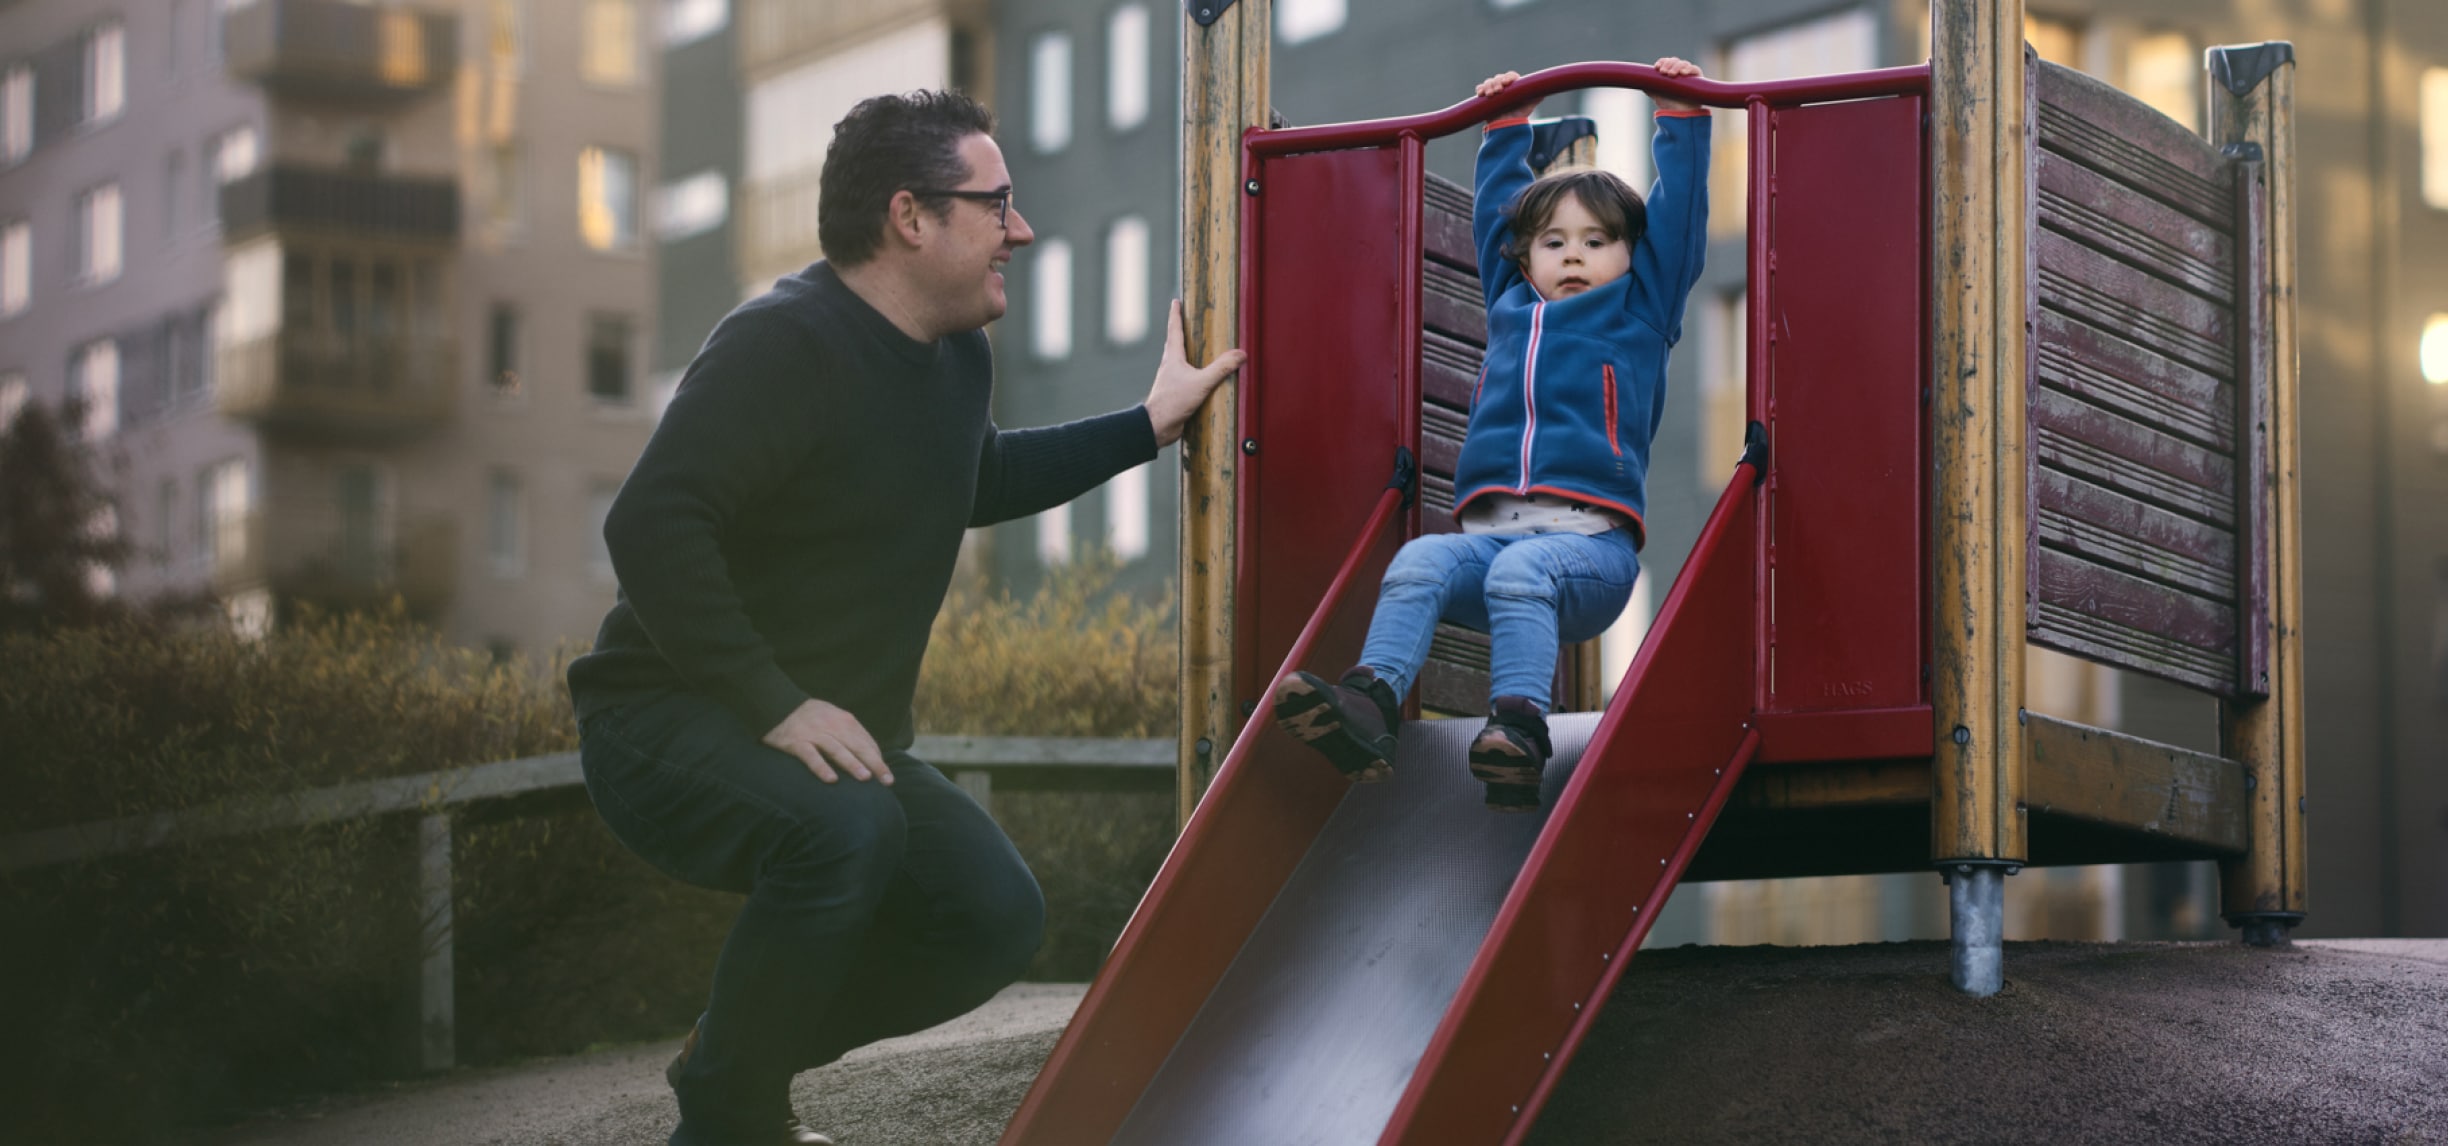 Un uomo sorride a un bambino che scende da uno scivolo in un parco giochi.